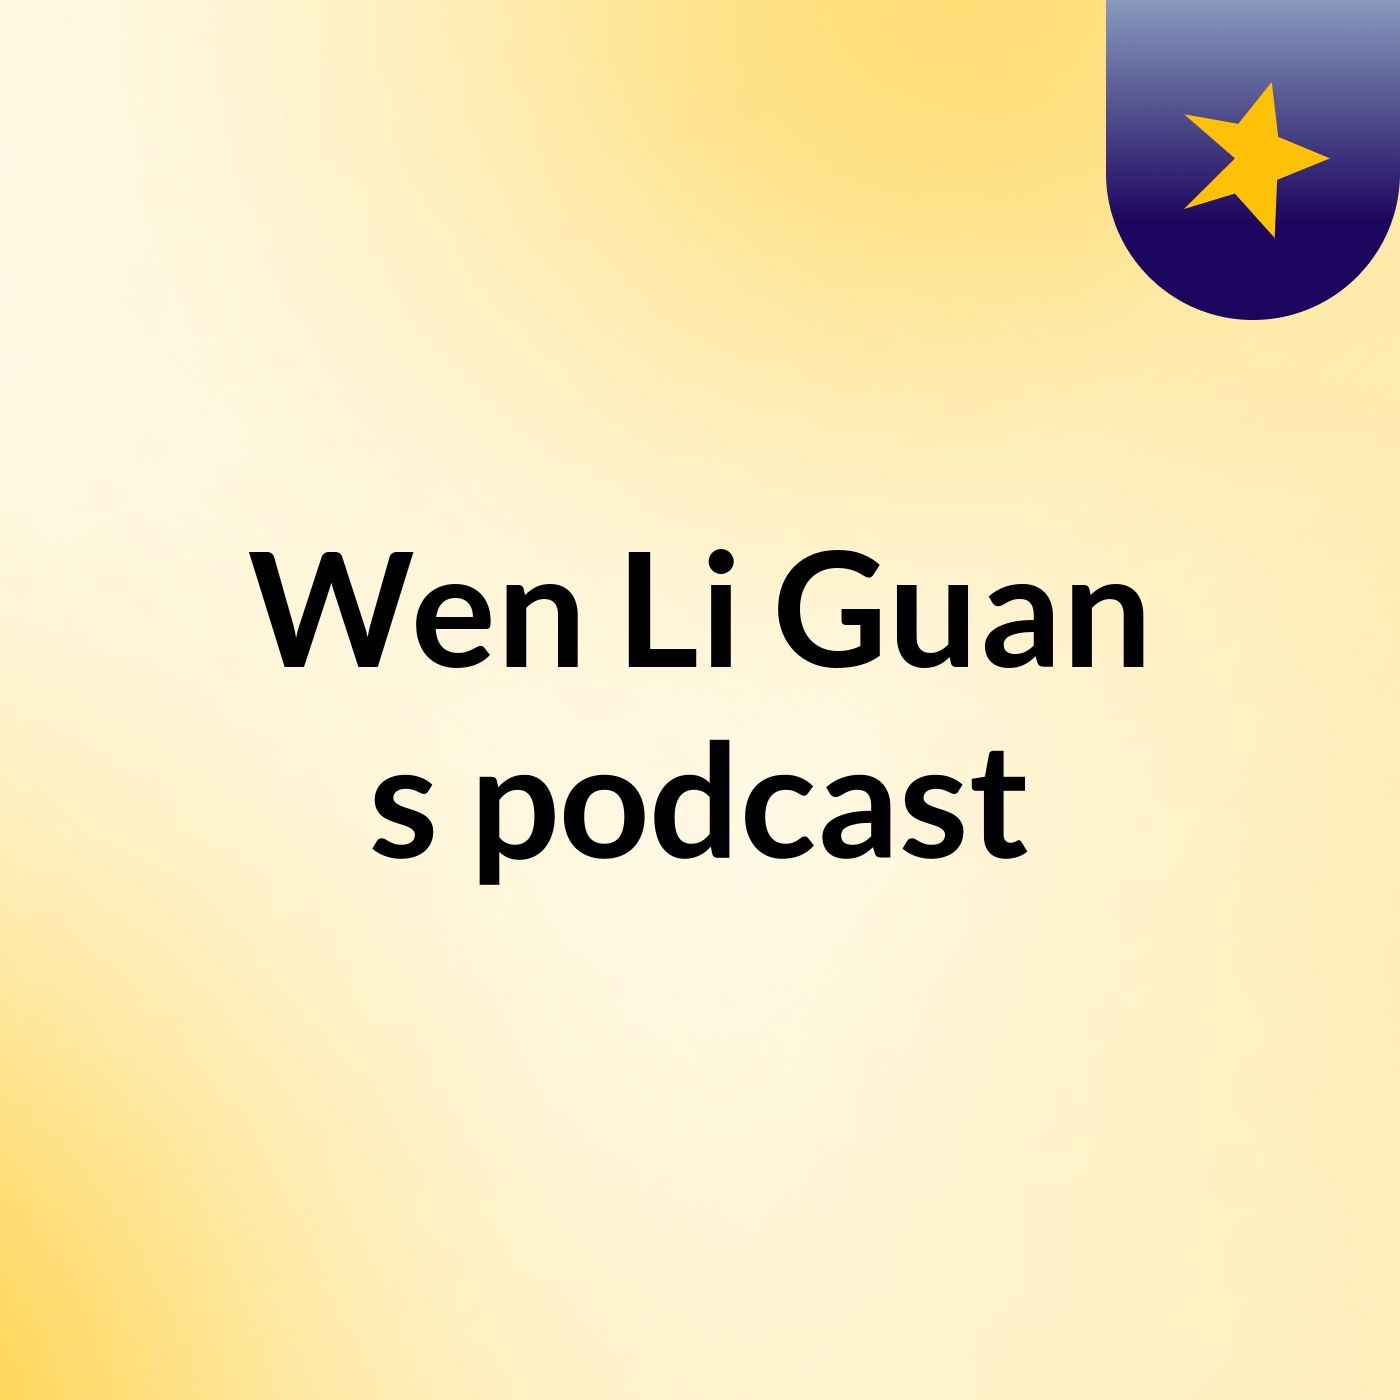 Wen Li Guan's podcast